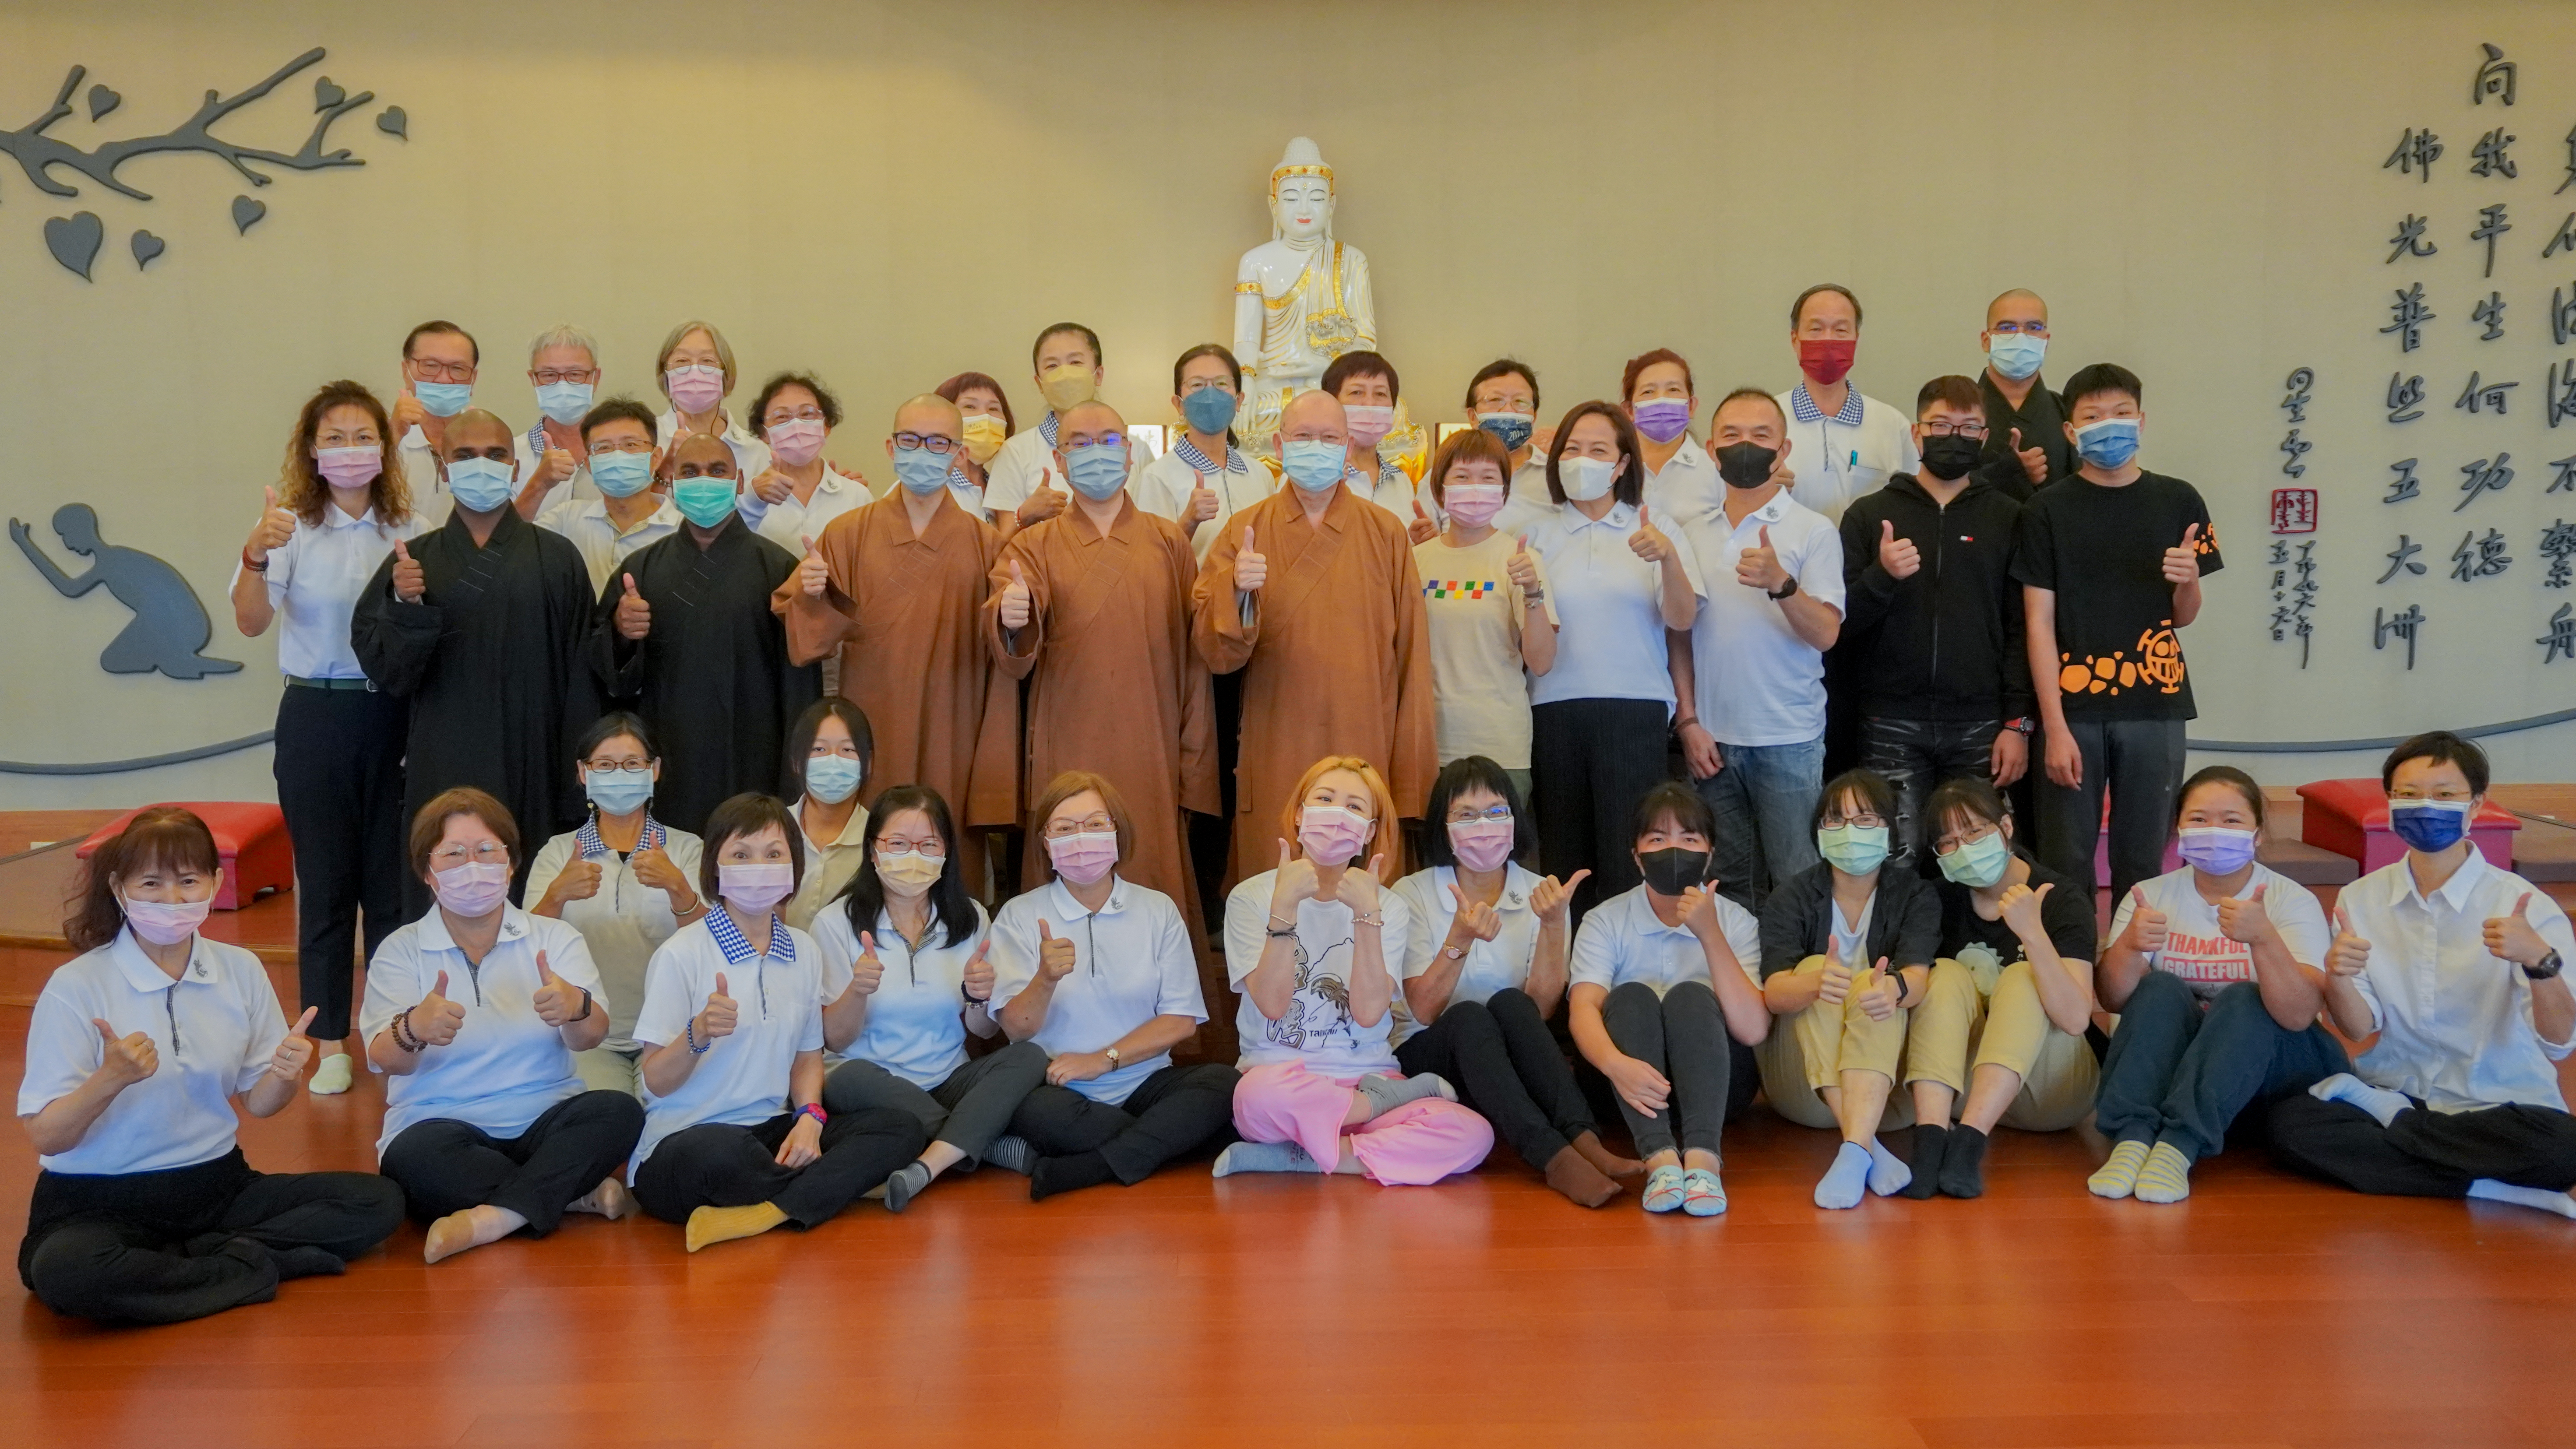 1佛光山义工会说唱布教团「宜兰寻根之旅」一行与佛教学系师生合影留念。